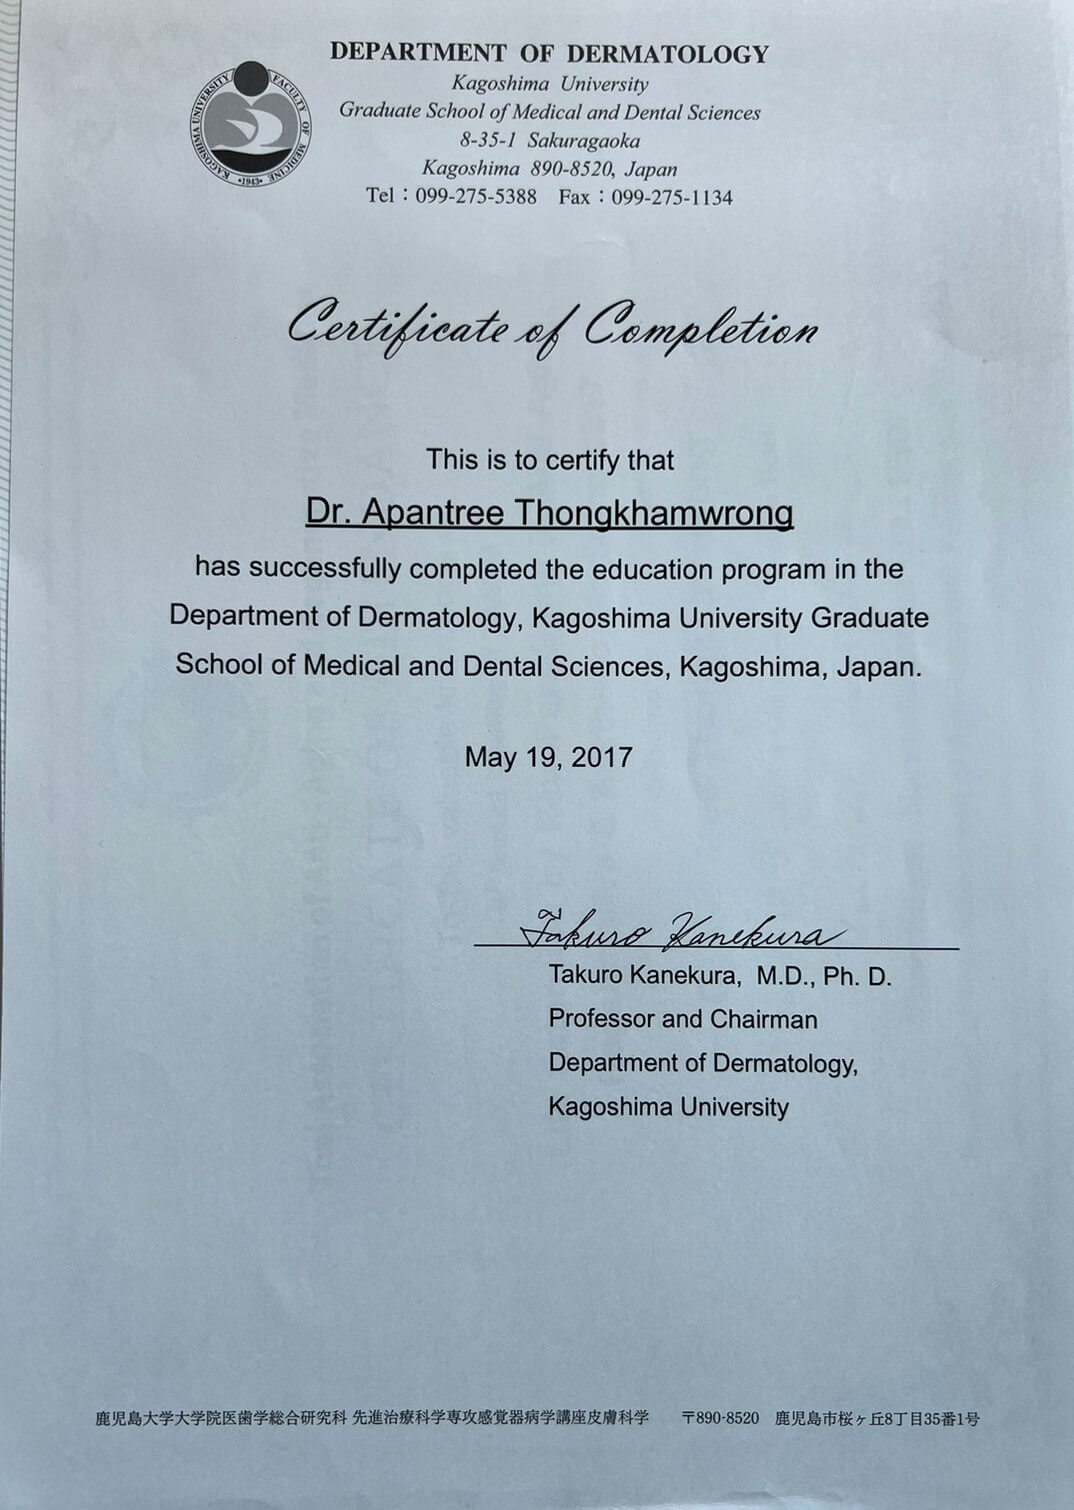 dr-Apantree-Thongkhamwrong-Certificate-7